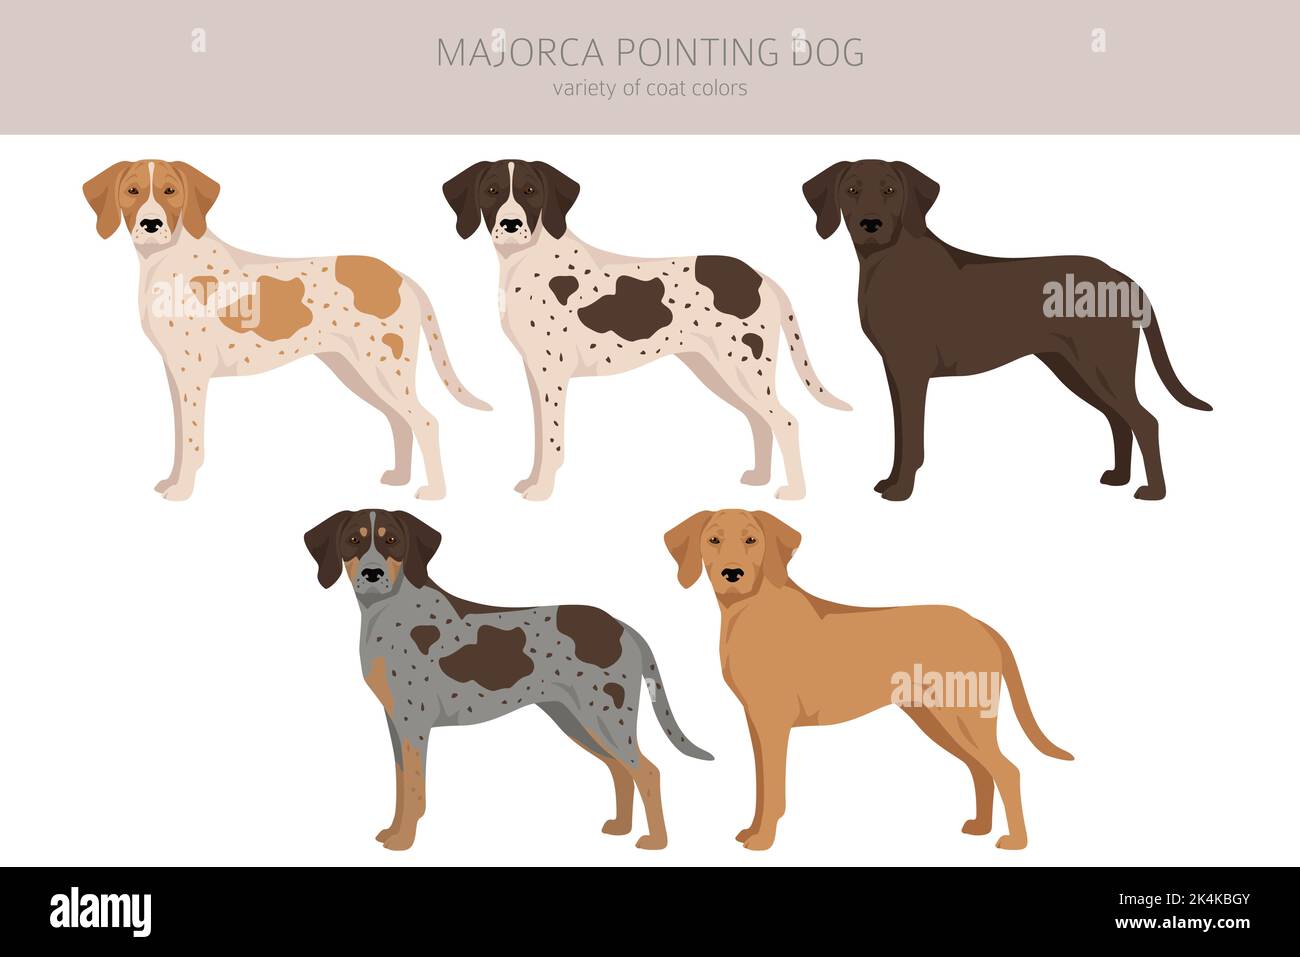 Mallorca zeigt Hund Clipart. Alle Fellfarben eingestellt. Alle Hunderassen Merkmale Infografik. Vektorgrafik Stock Vektor